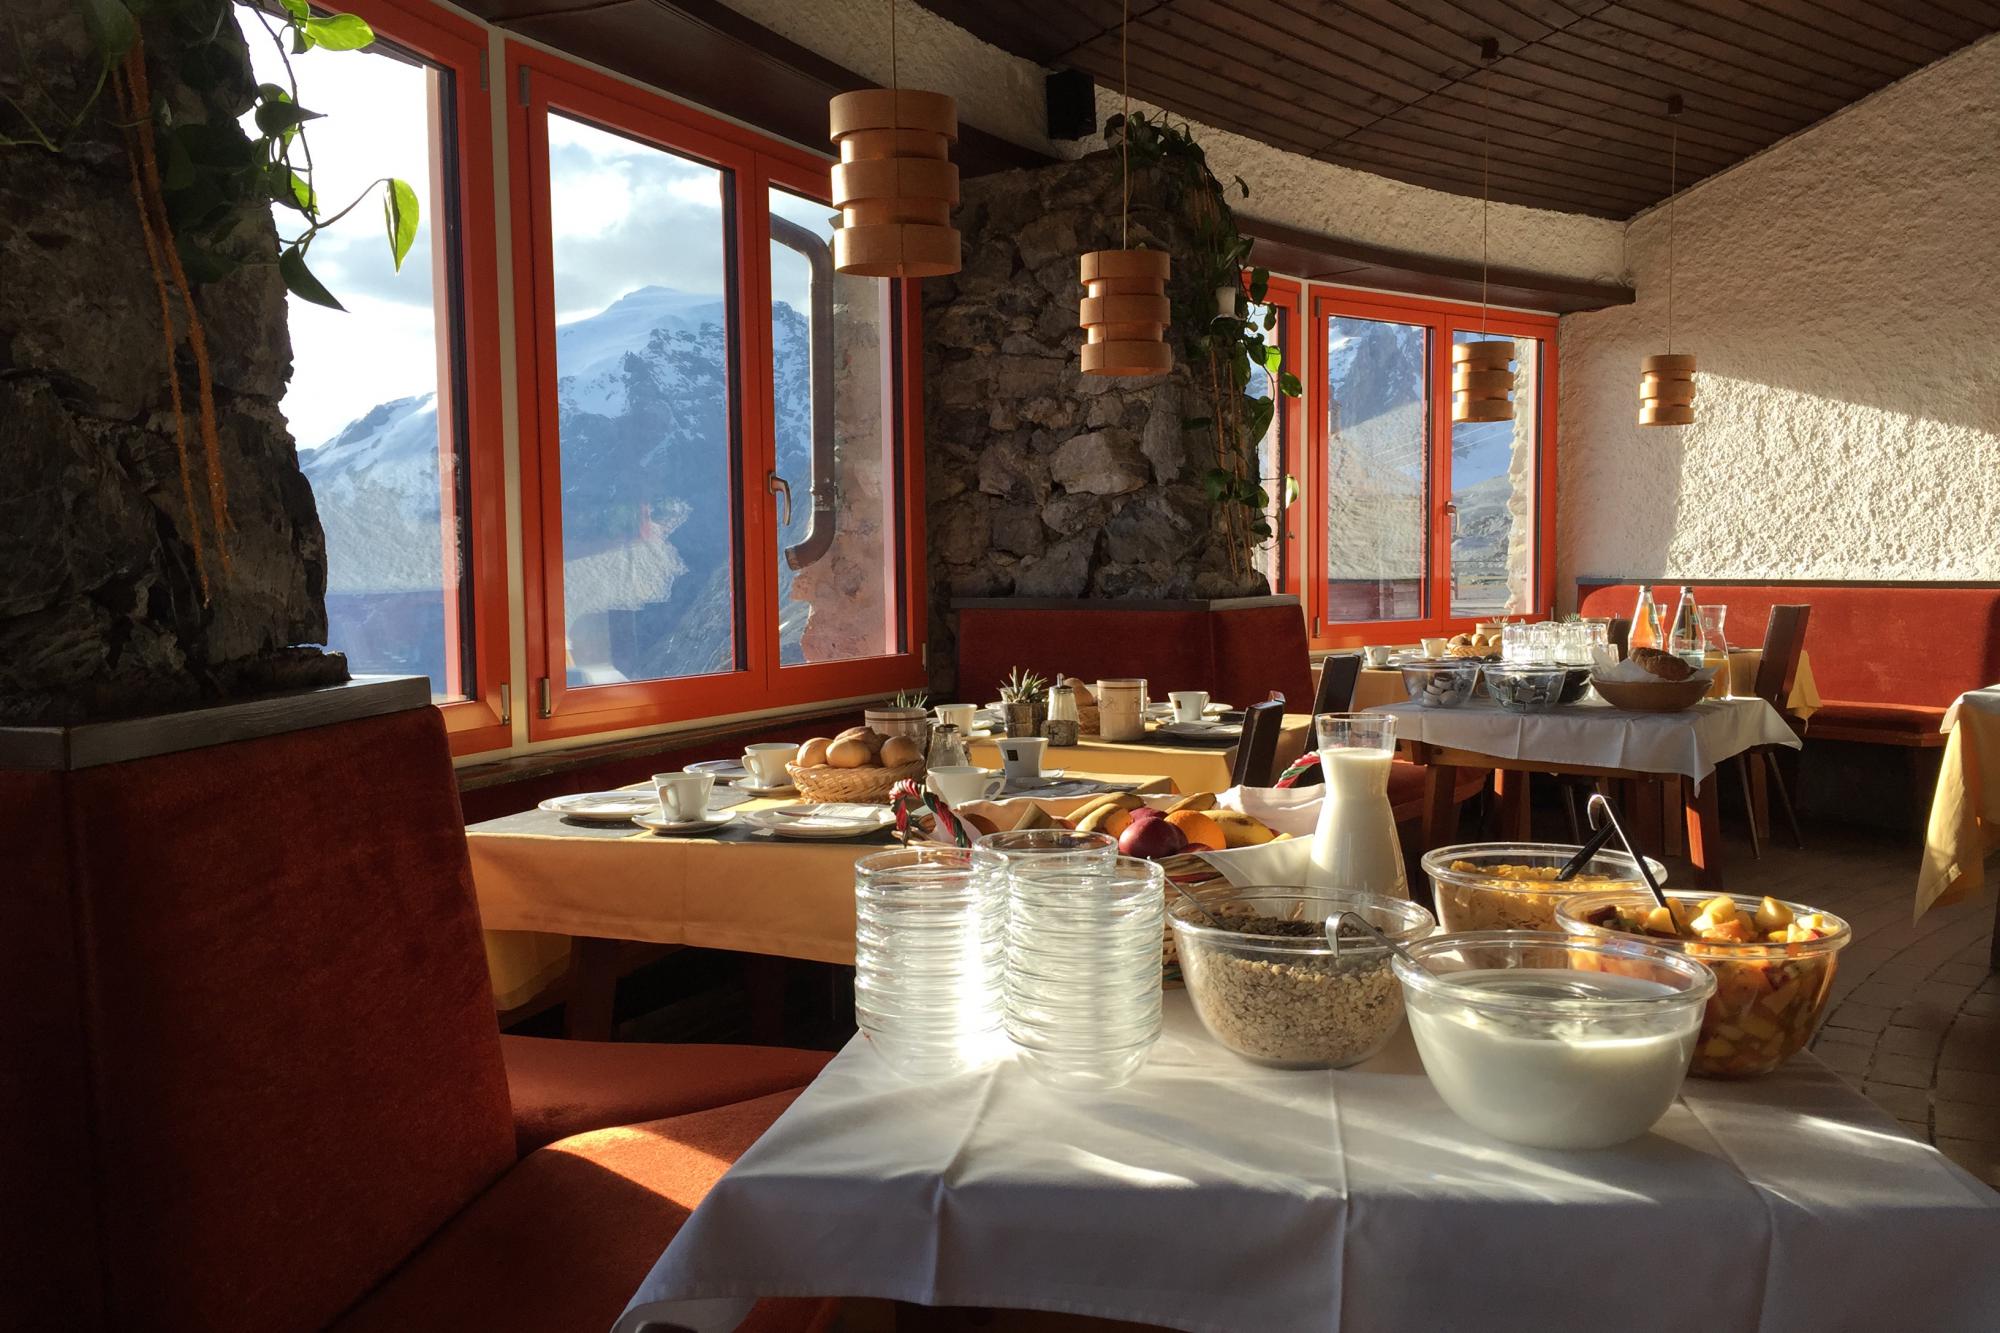 Frühstücken & Brunch am Stilfser Joch – Tibet Hütte